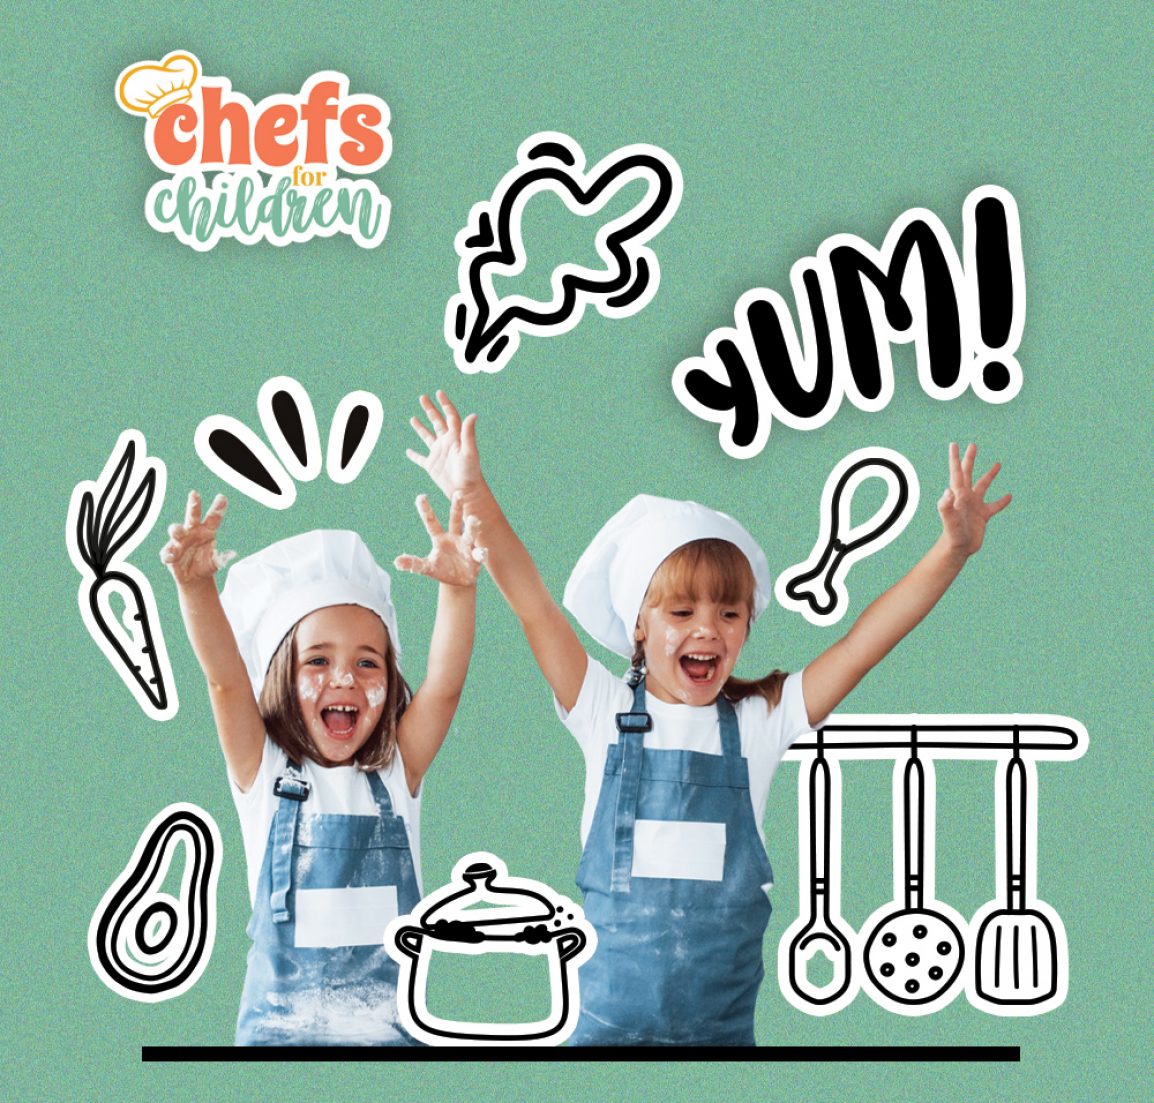 Chefs for Children